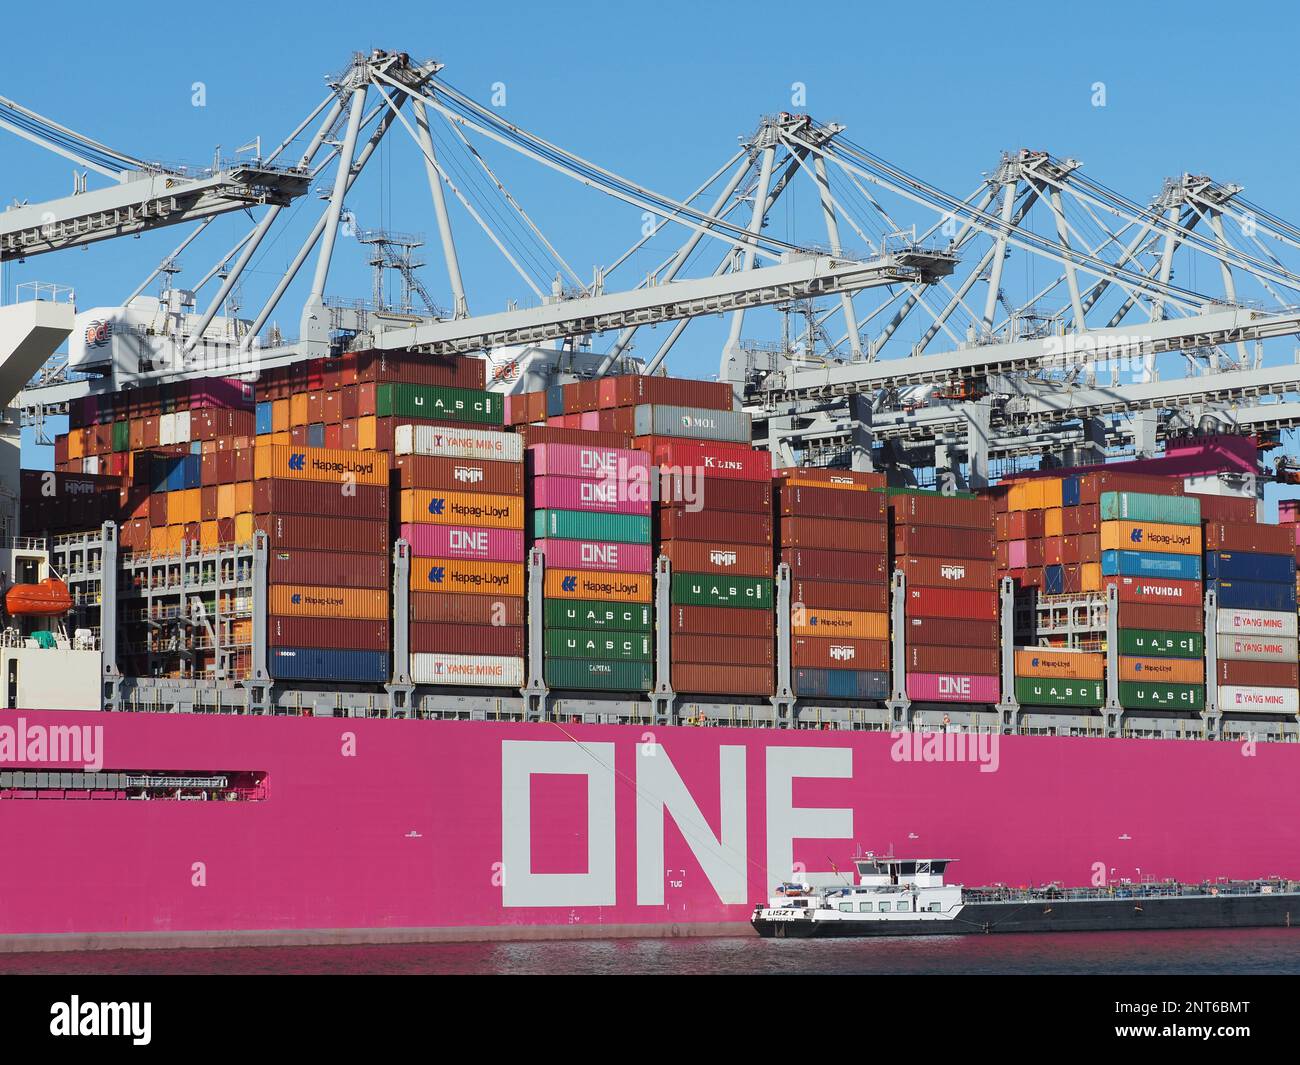 Gran buque de contenedores rosa de la red japonesa ONE Ocean Network Express con un pequeño buque de combustible junto a él en el puerto de Rotterdam, Países Bajos Foto de stock